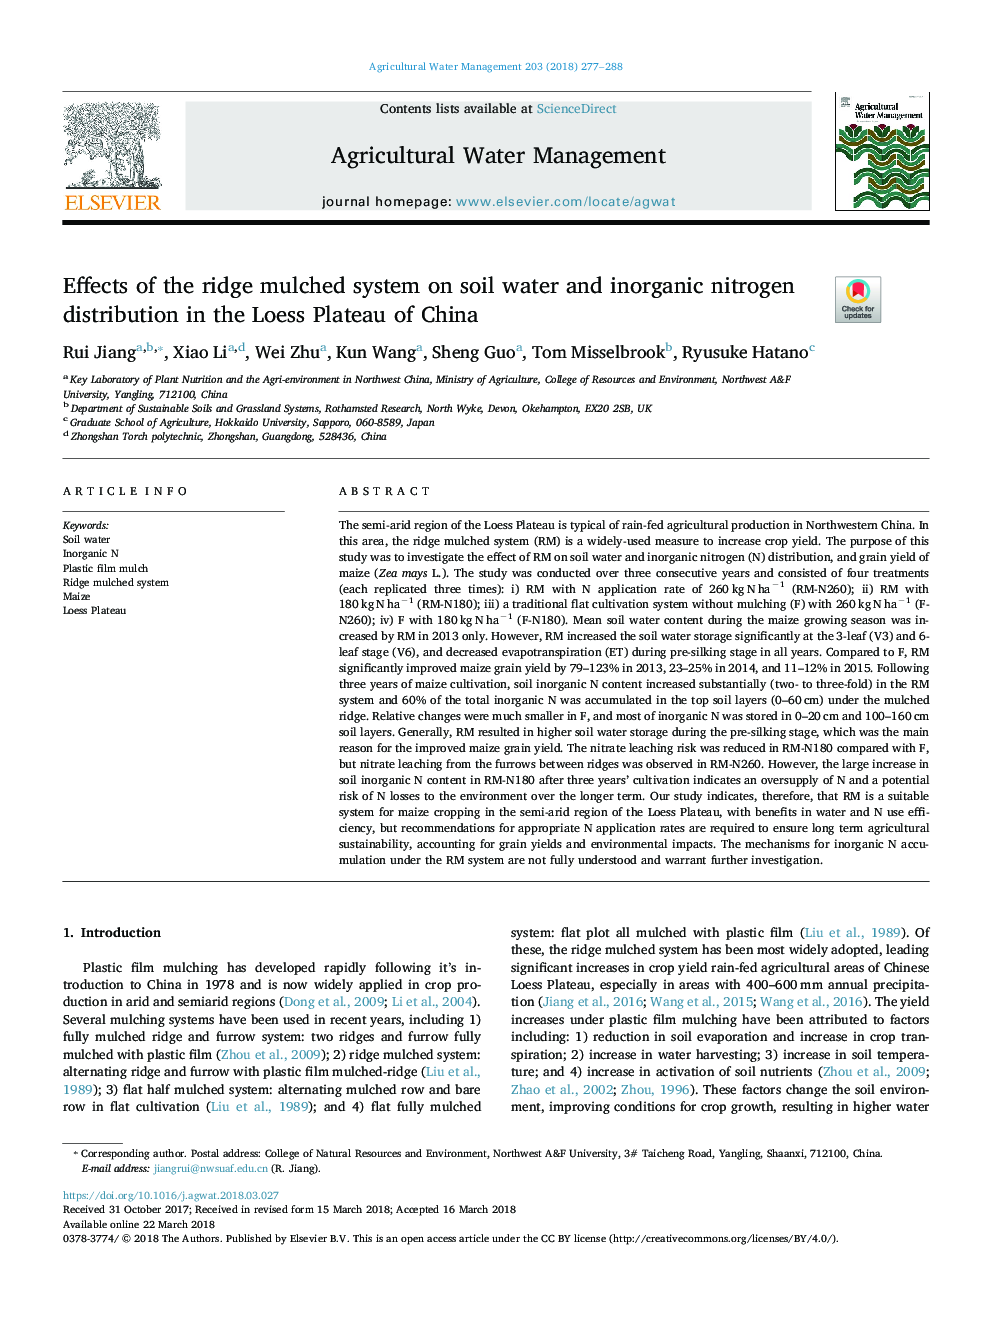 اثرات سیستم آبشویی بر روی آب خاک و توزیع نیتروژن غیر آلی در ورقه لس در چین 